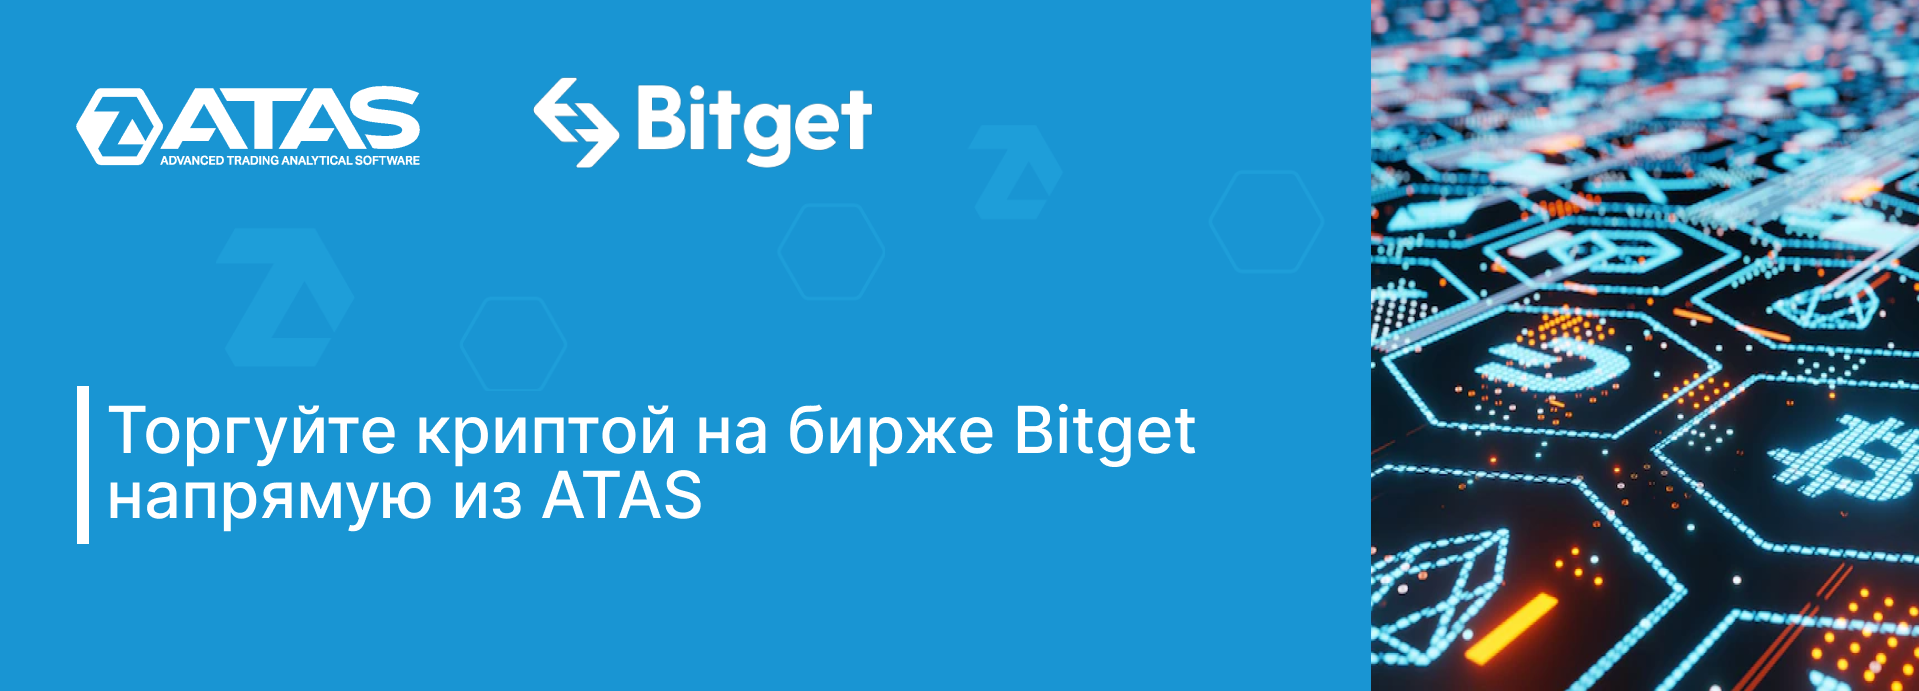 Торгуйте криптой на бирже Bitget напрямую из ATAS